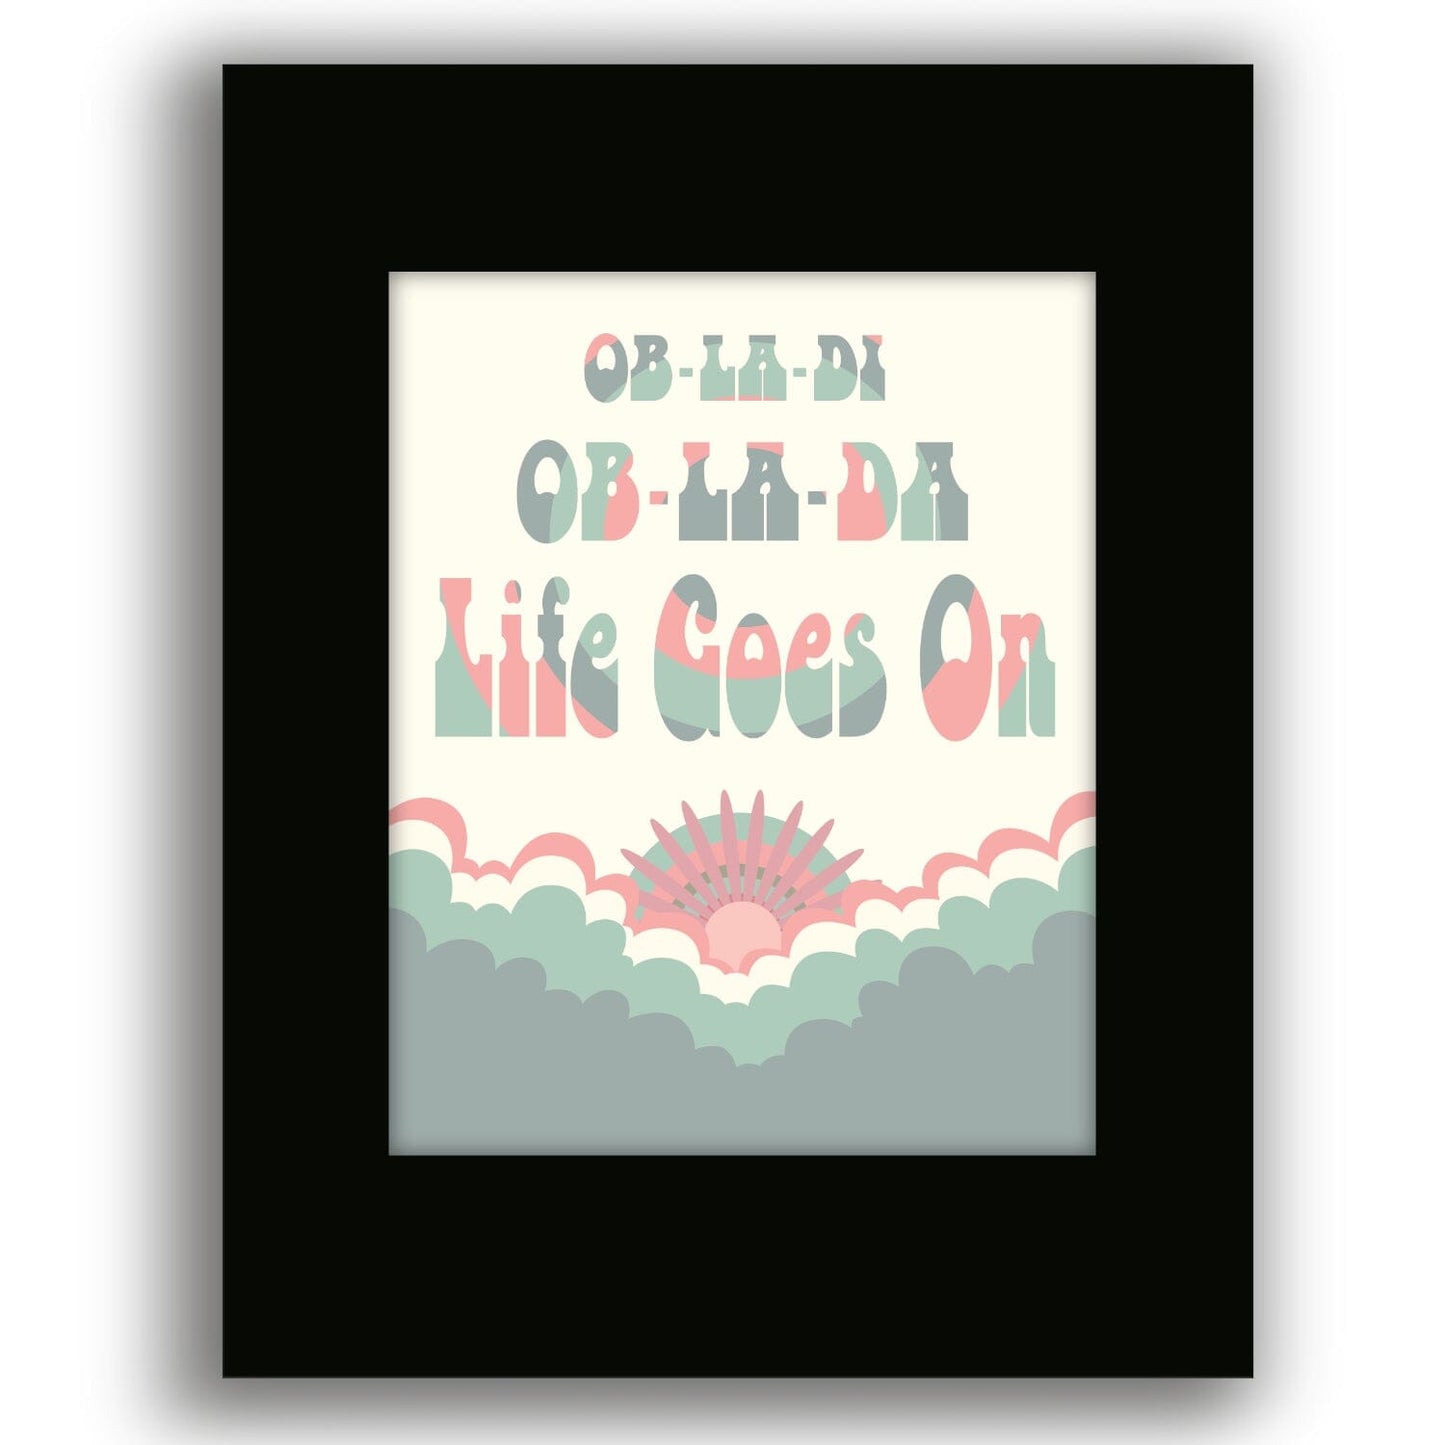 Ob-La-Di Ob-La-Da by the Beatles - Song Lyrics Music Print Song Lyrics Art Song Lyrics Art 8x10 Black Matted Print 